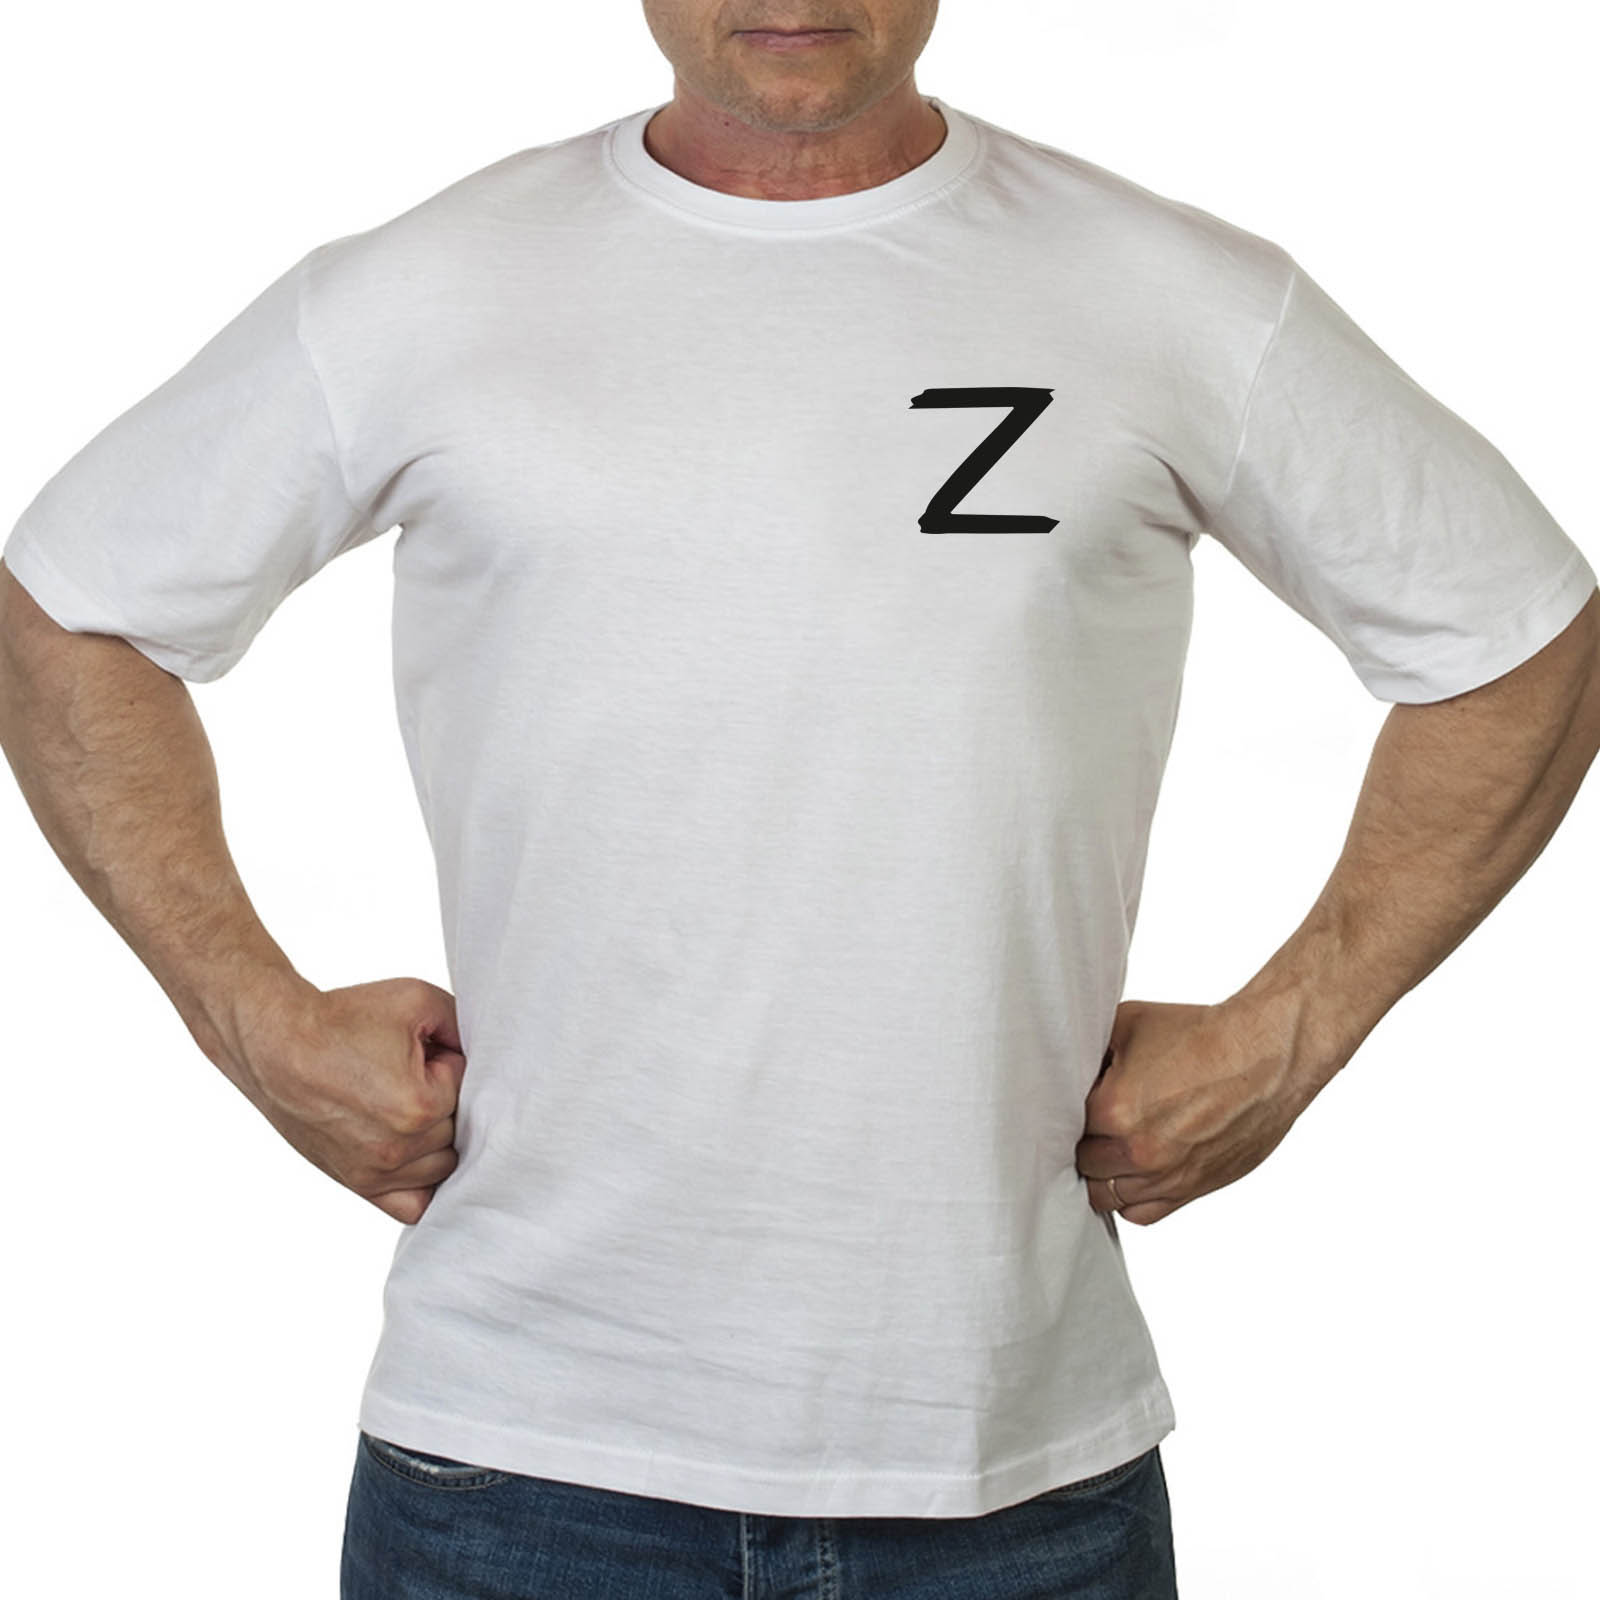 Купить в интернете мужскую футболку Z